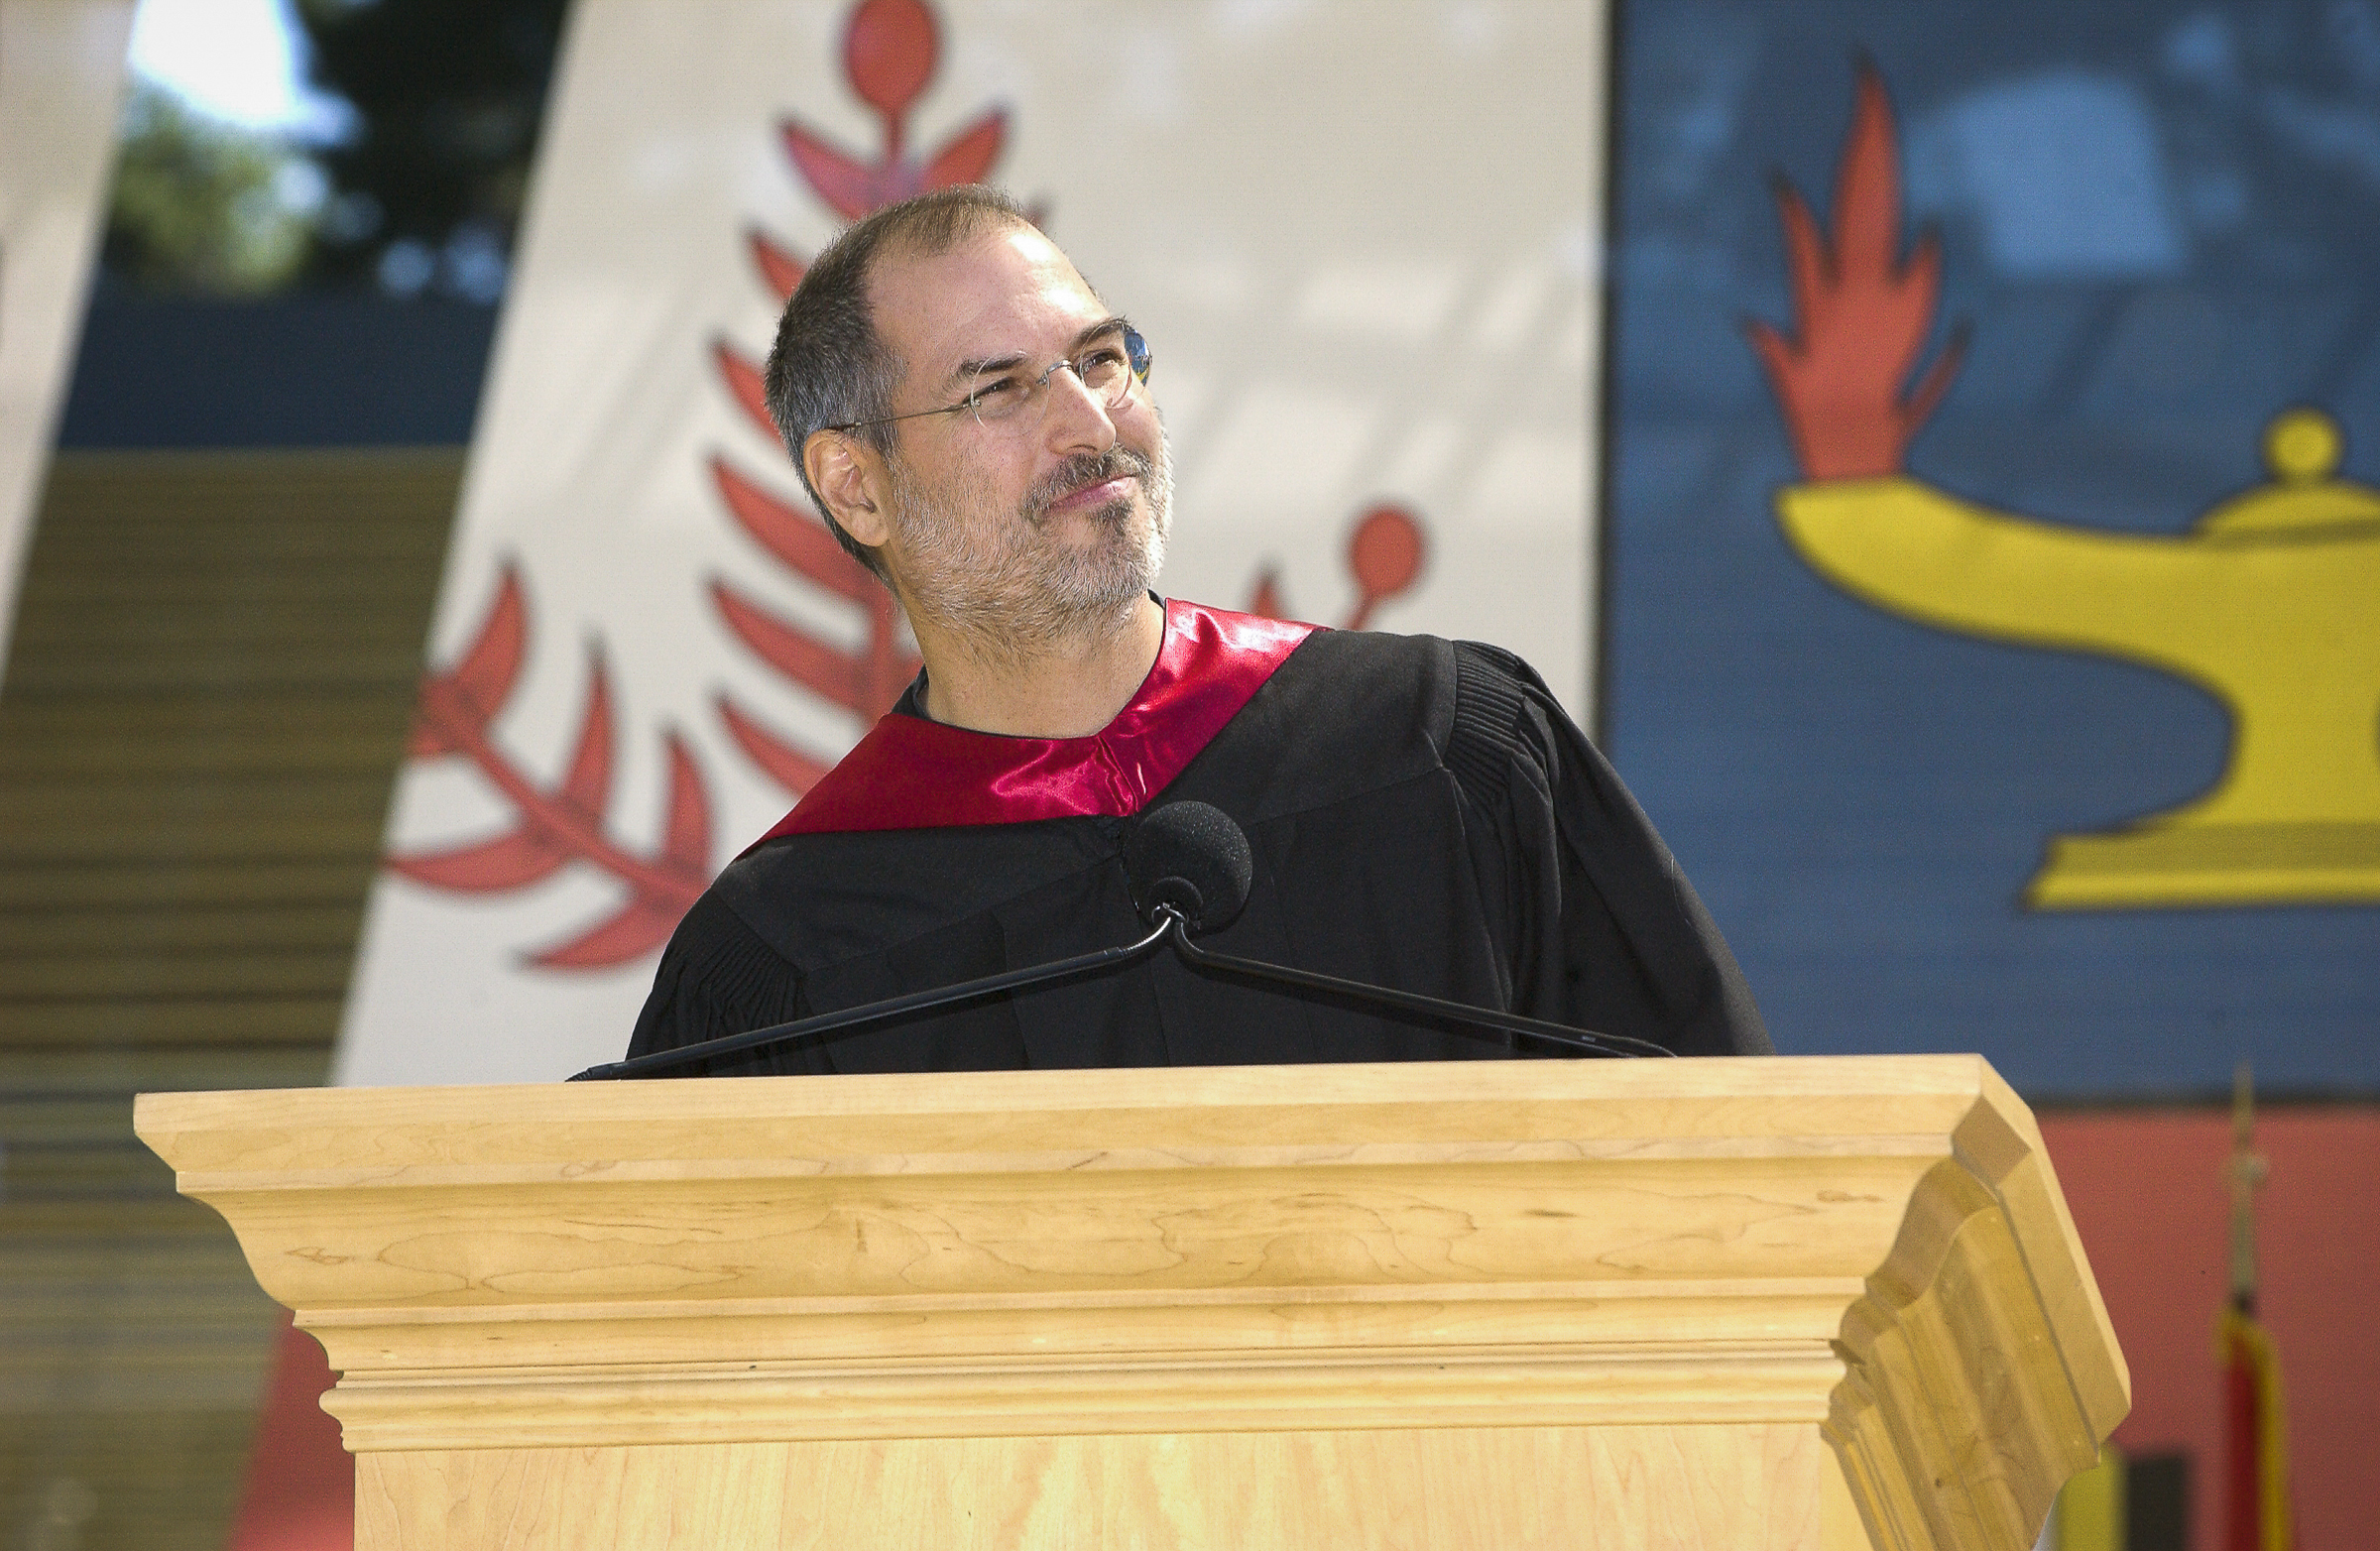 La Oratoria .archiff. Steve Jobs discurso Stanford.